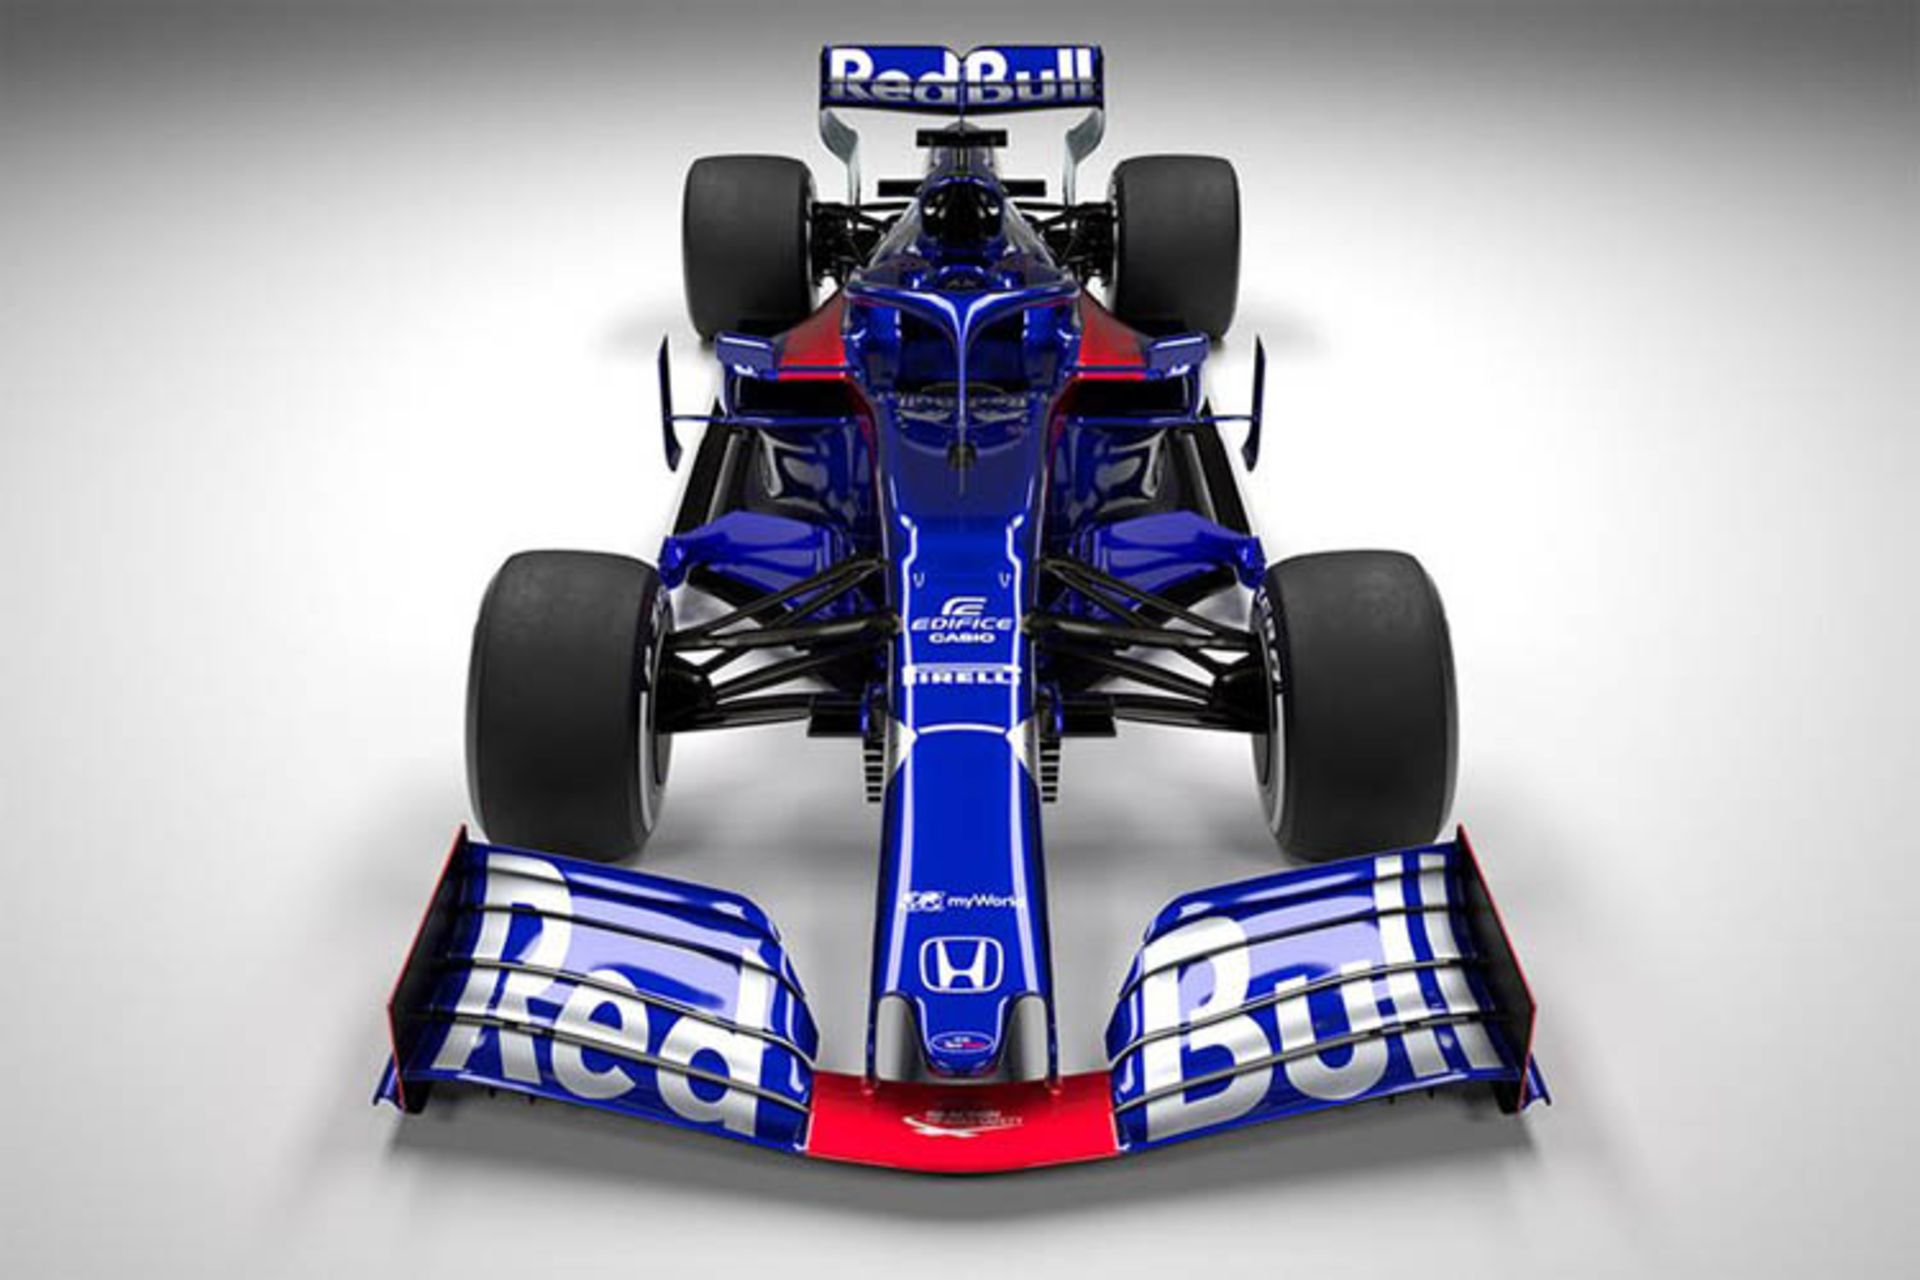 Toro Rosso Formula 1 car / خودرو فرمول یک تورو روسو